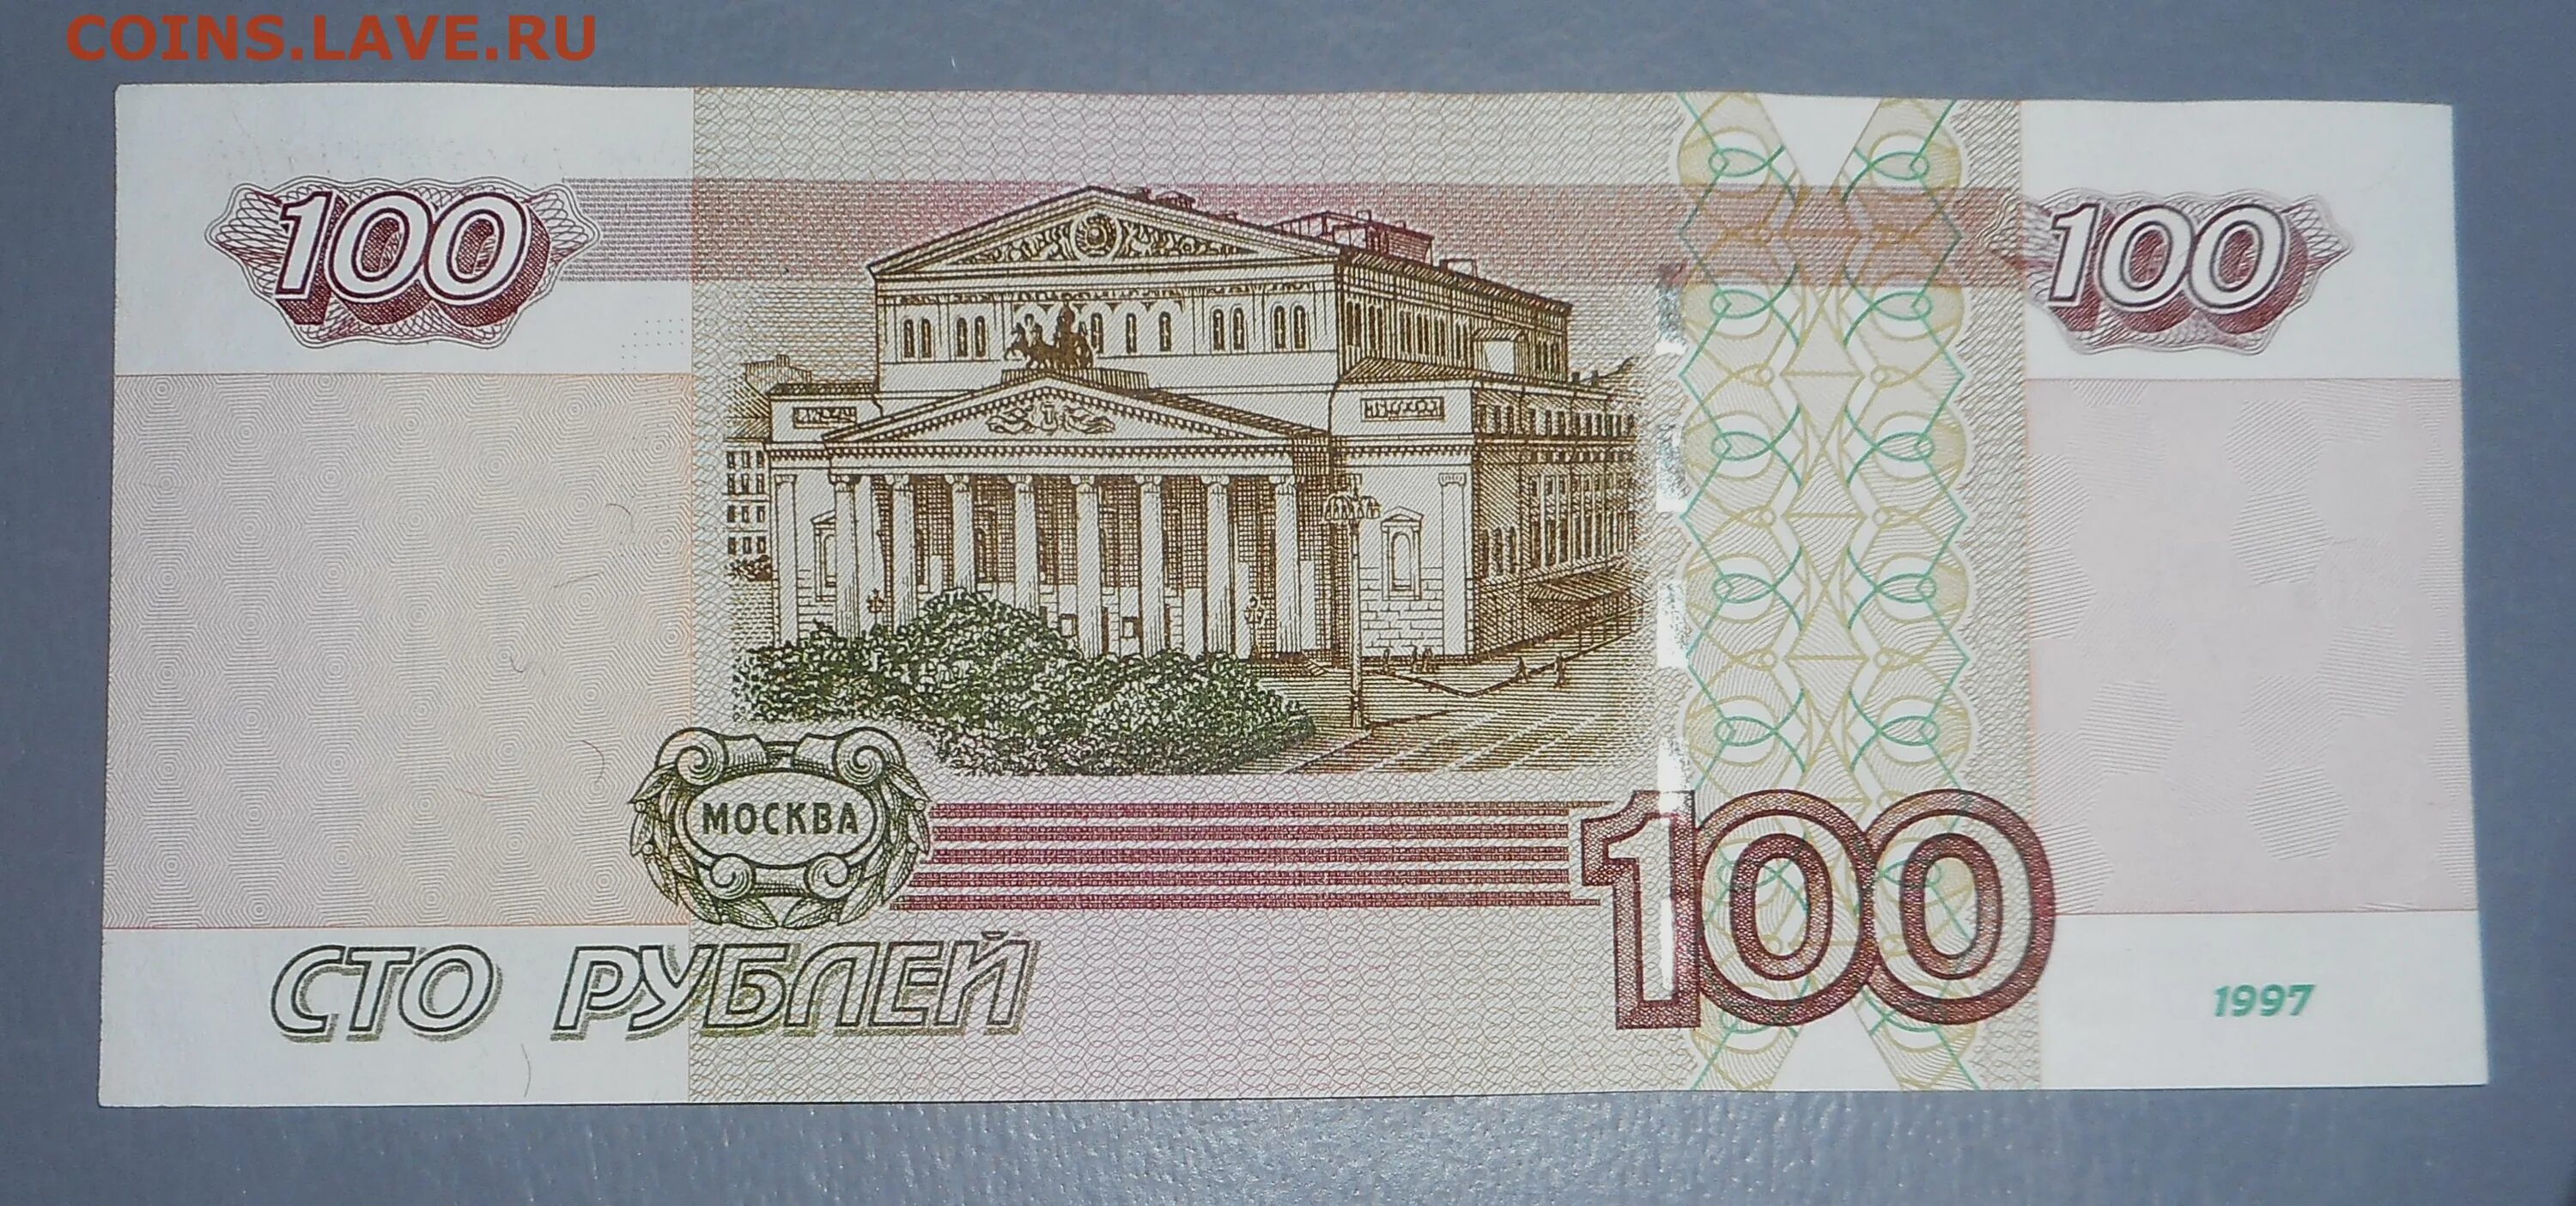 Купюра 100000 рублей 1995 года. 100 Рублей 1995 года. СТО рублей купюра 1995 года. Купюра 100 рублей.